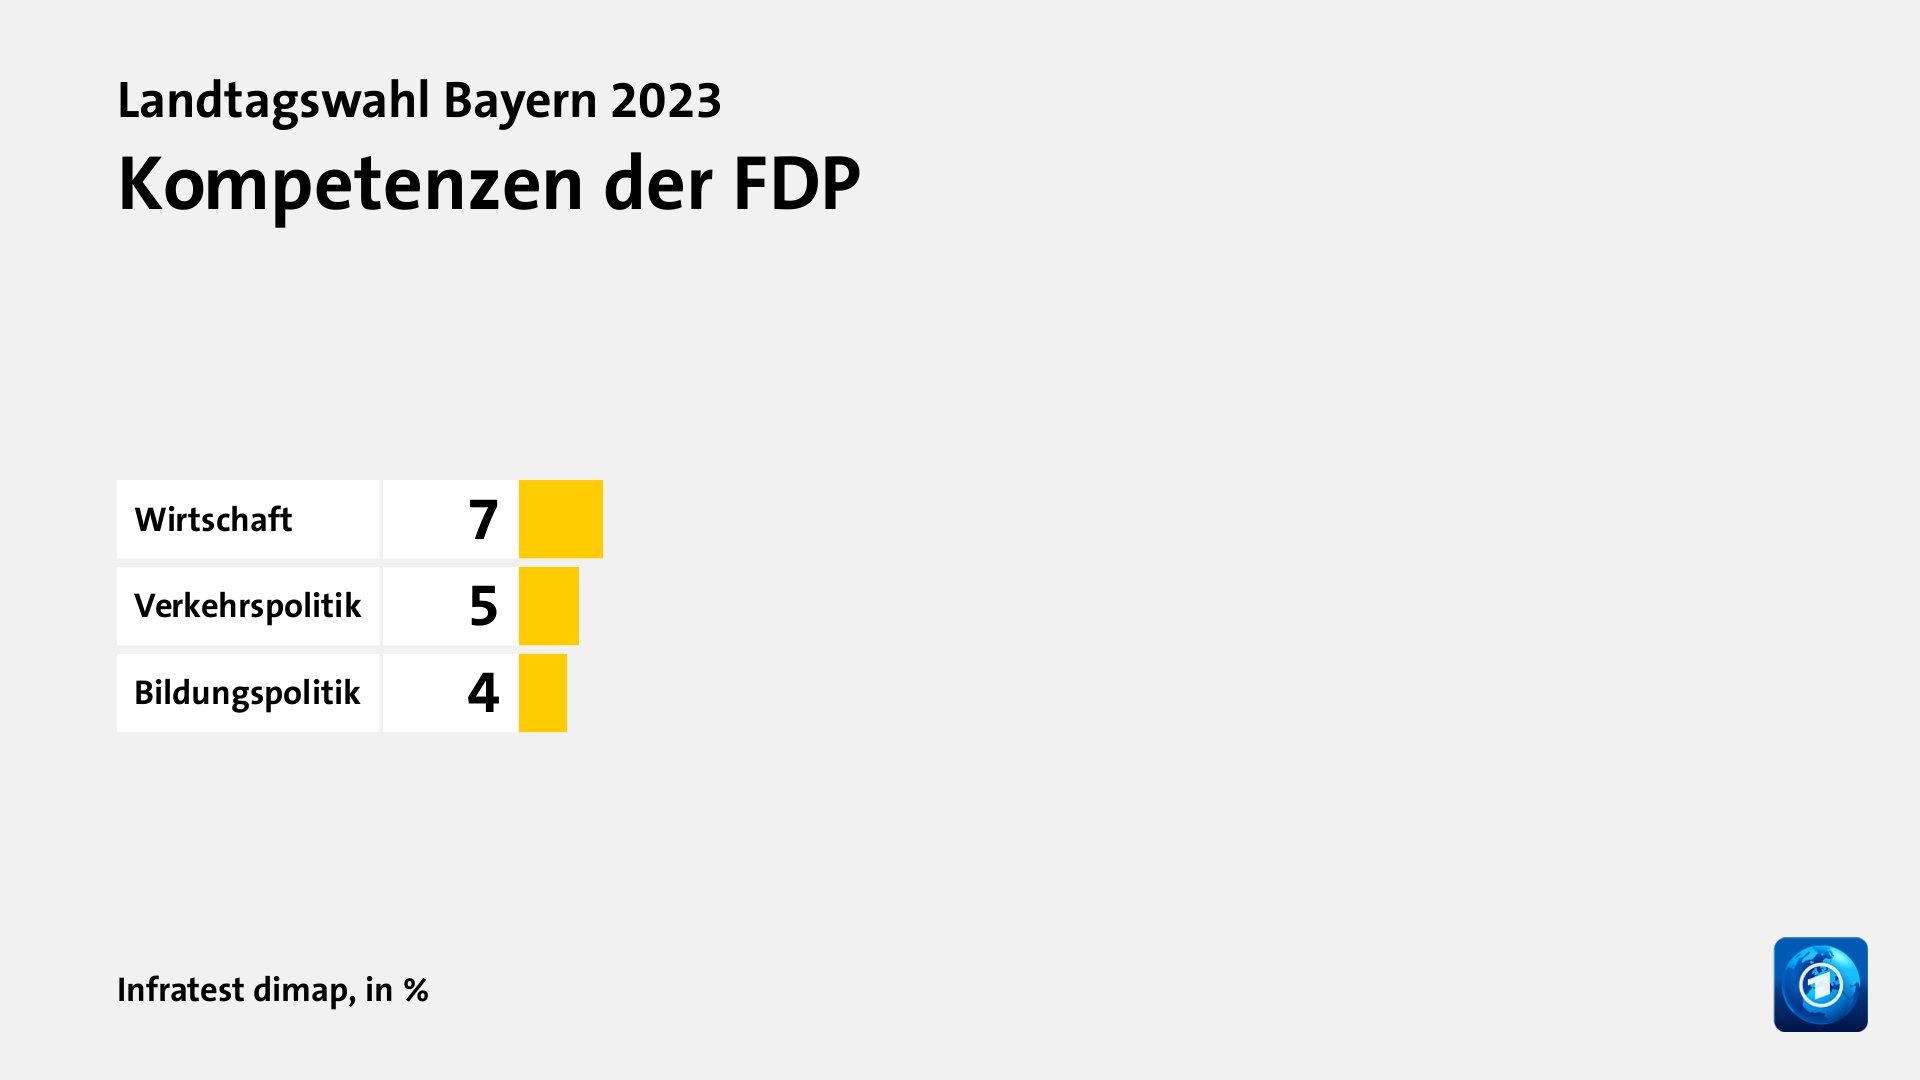 Kompetenzen der FDP, in %: Wirtschaft 7, Verkehrspolitik 5, Bildungspolitik 4, Quelle: Infratest dimap